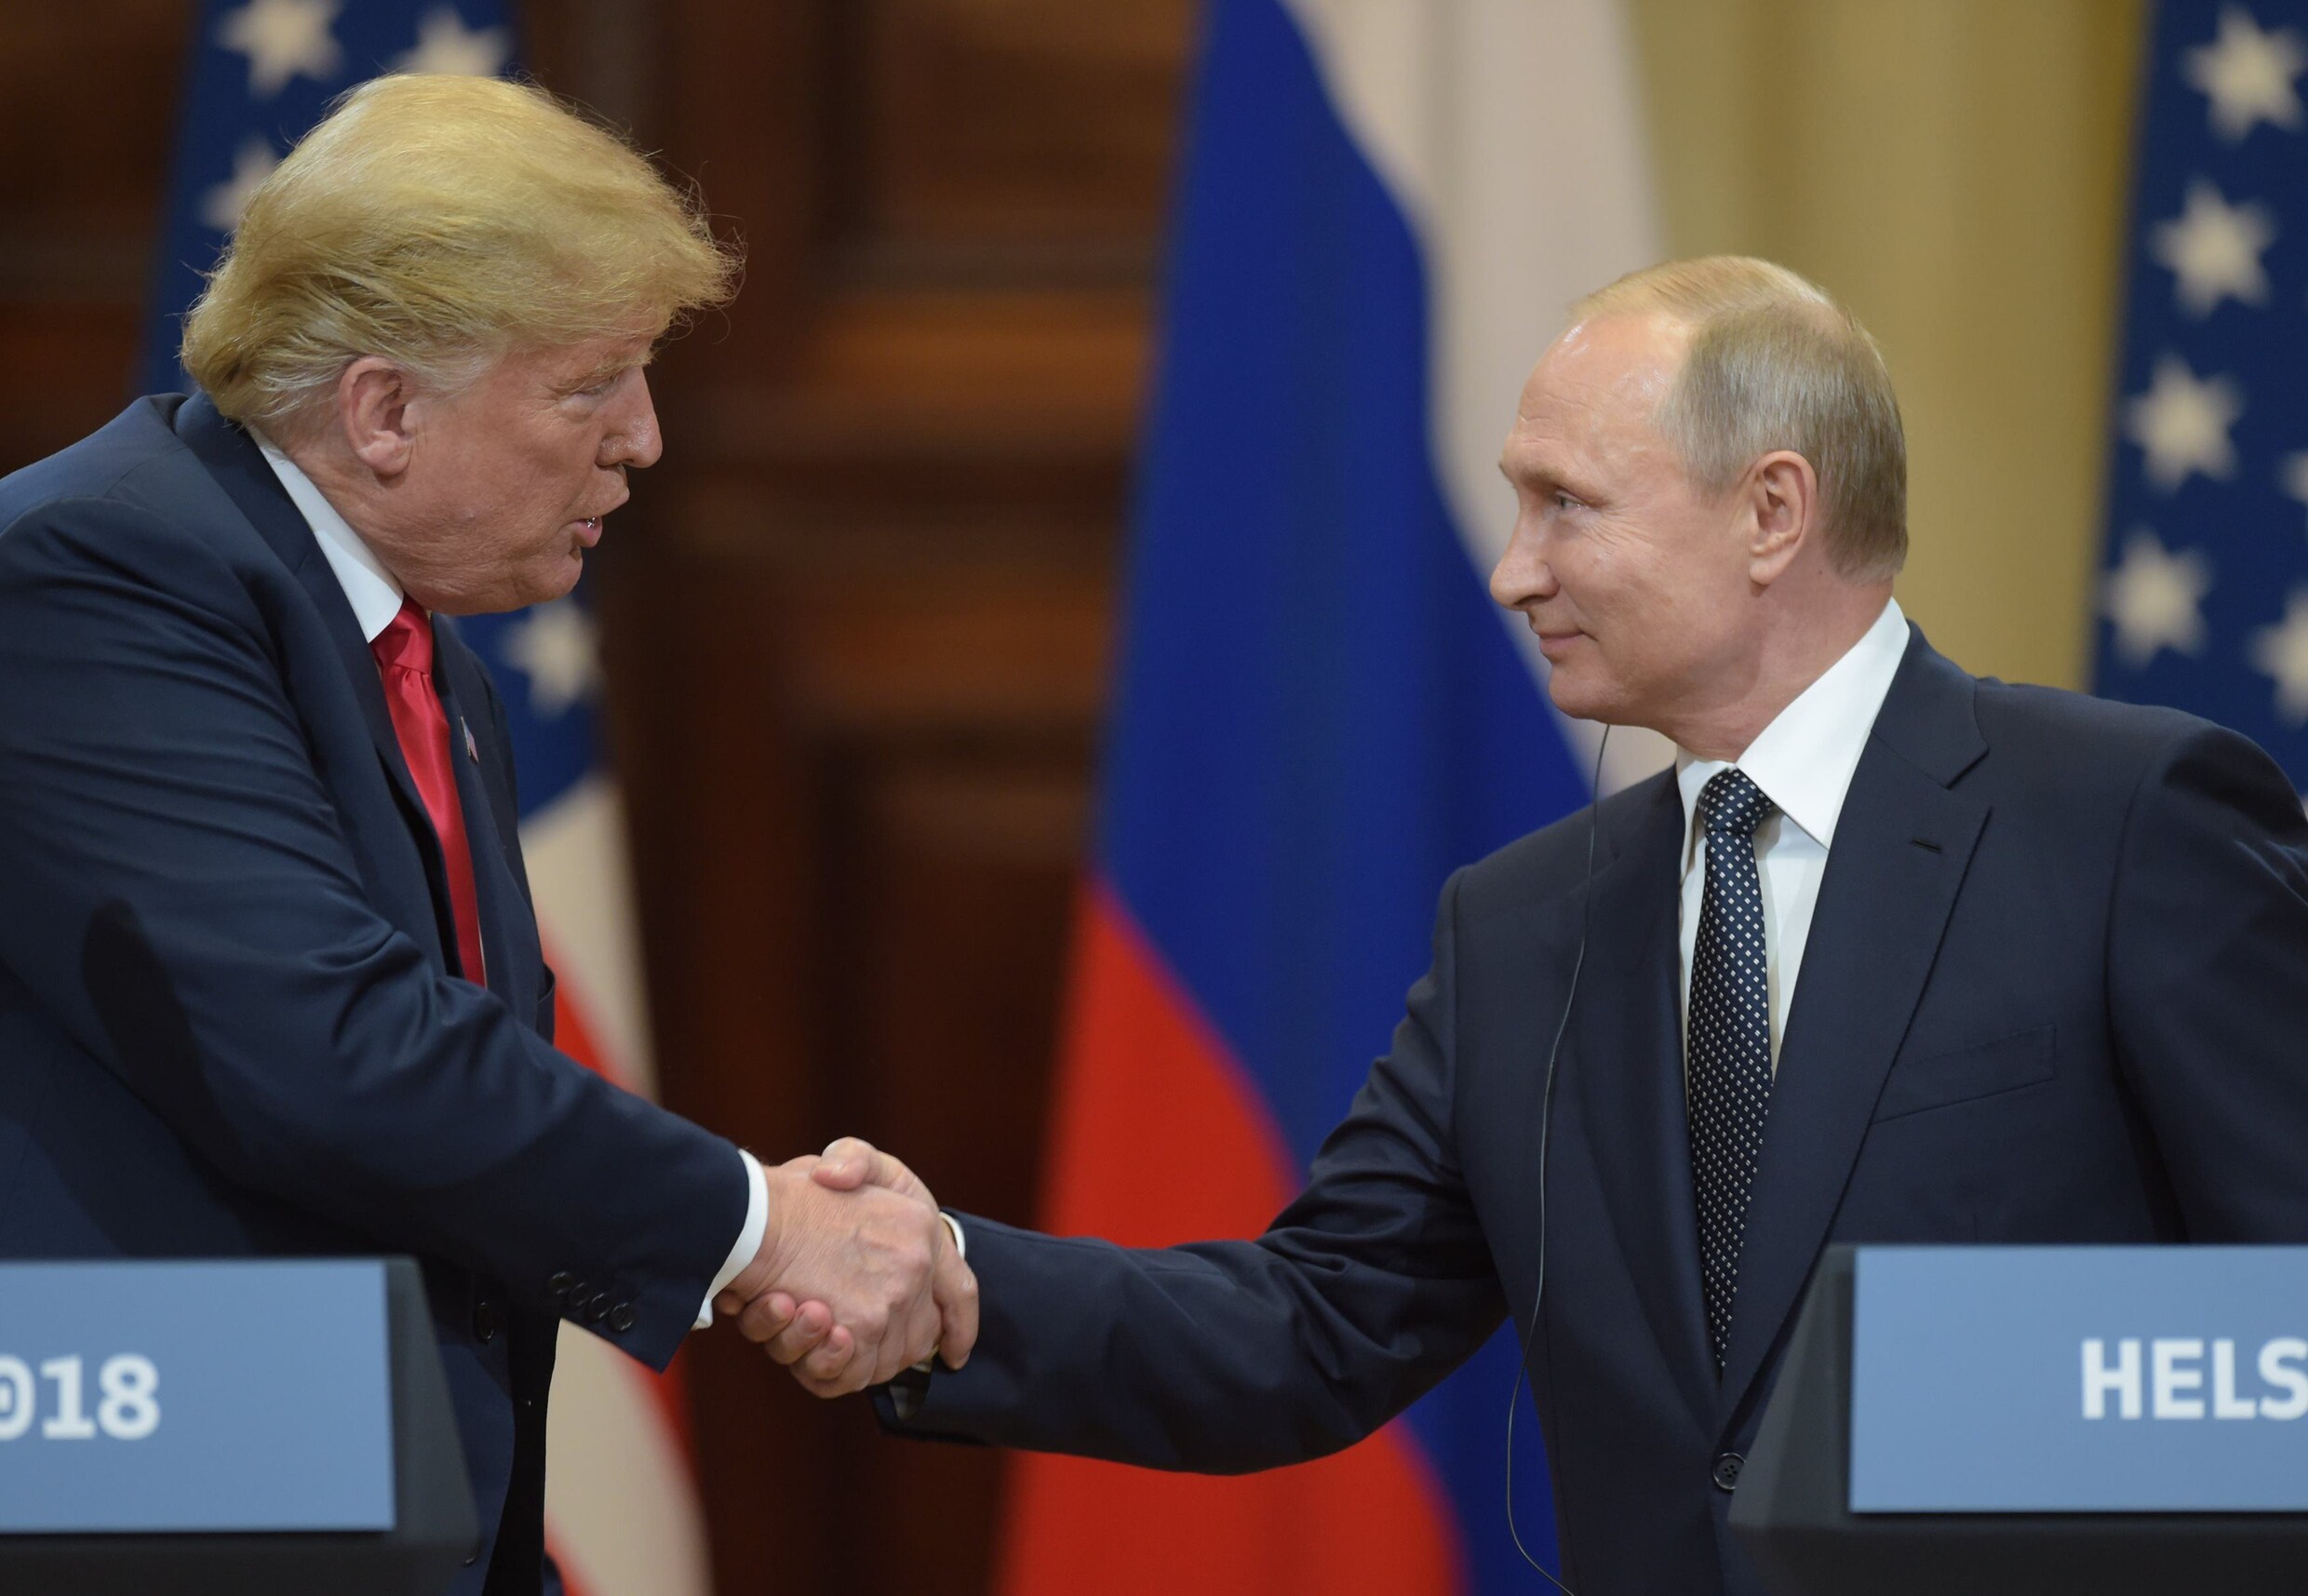 "Poetin probeerde mij te pakken via Donald Trump. Maar hij maakte één grote fout"